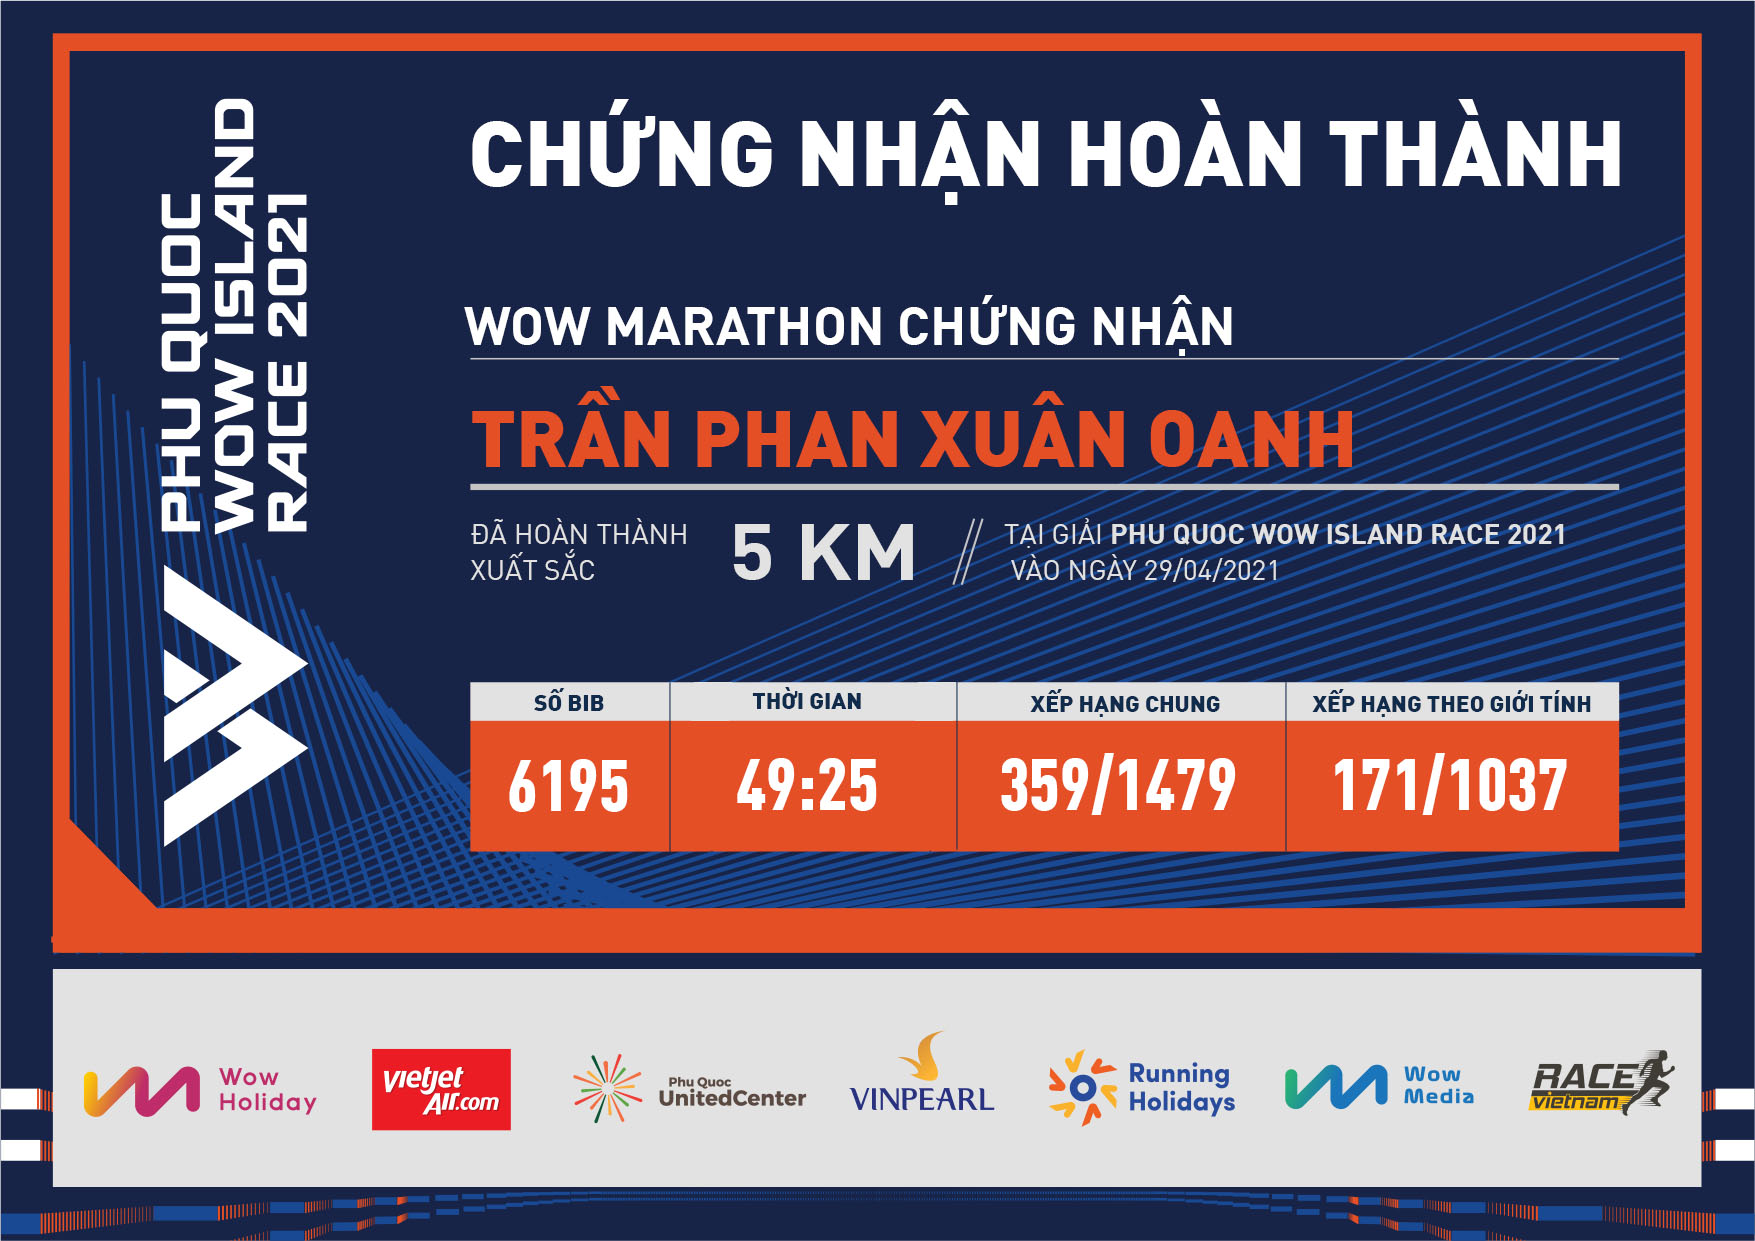 6195 - Trần Phan Xuân Oanh